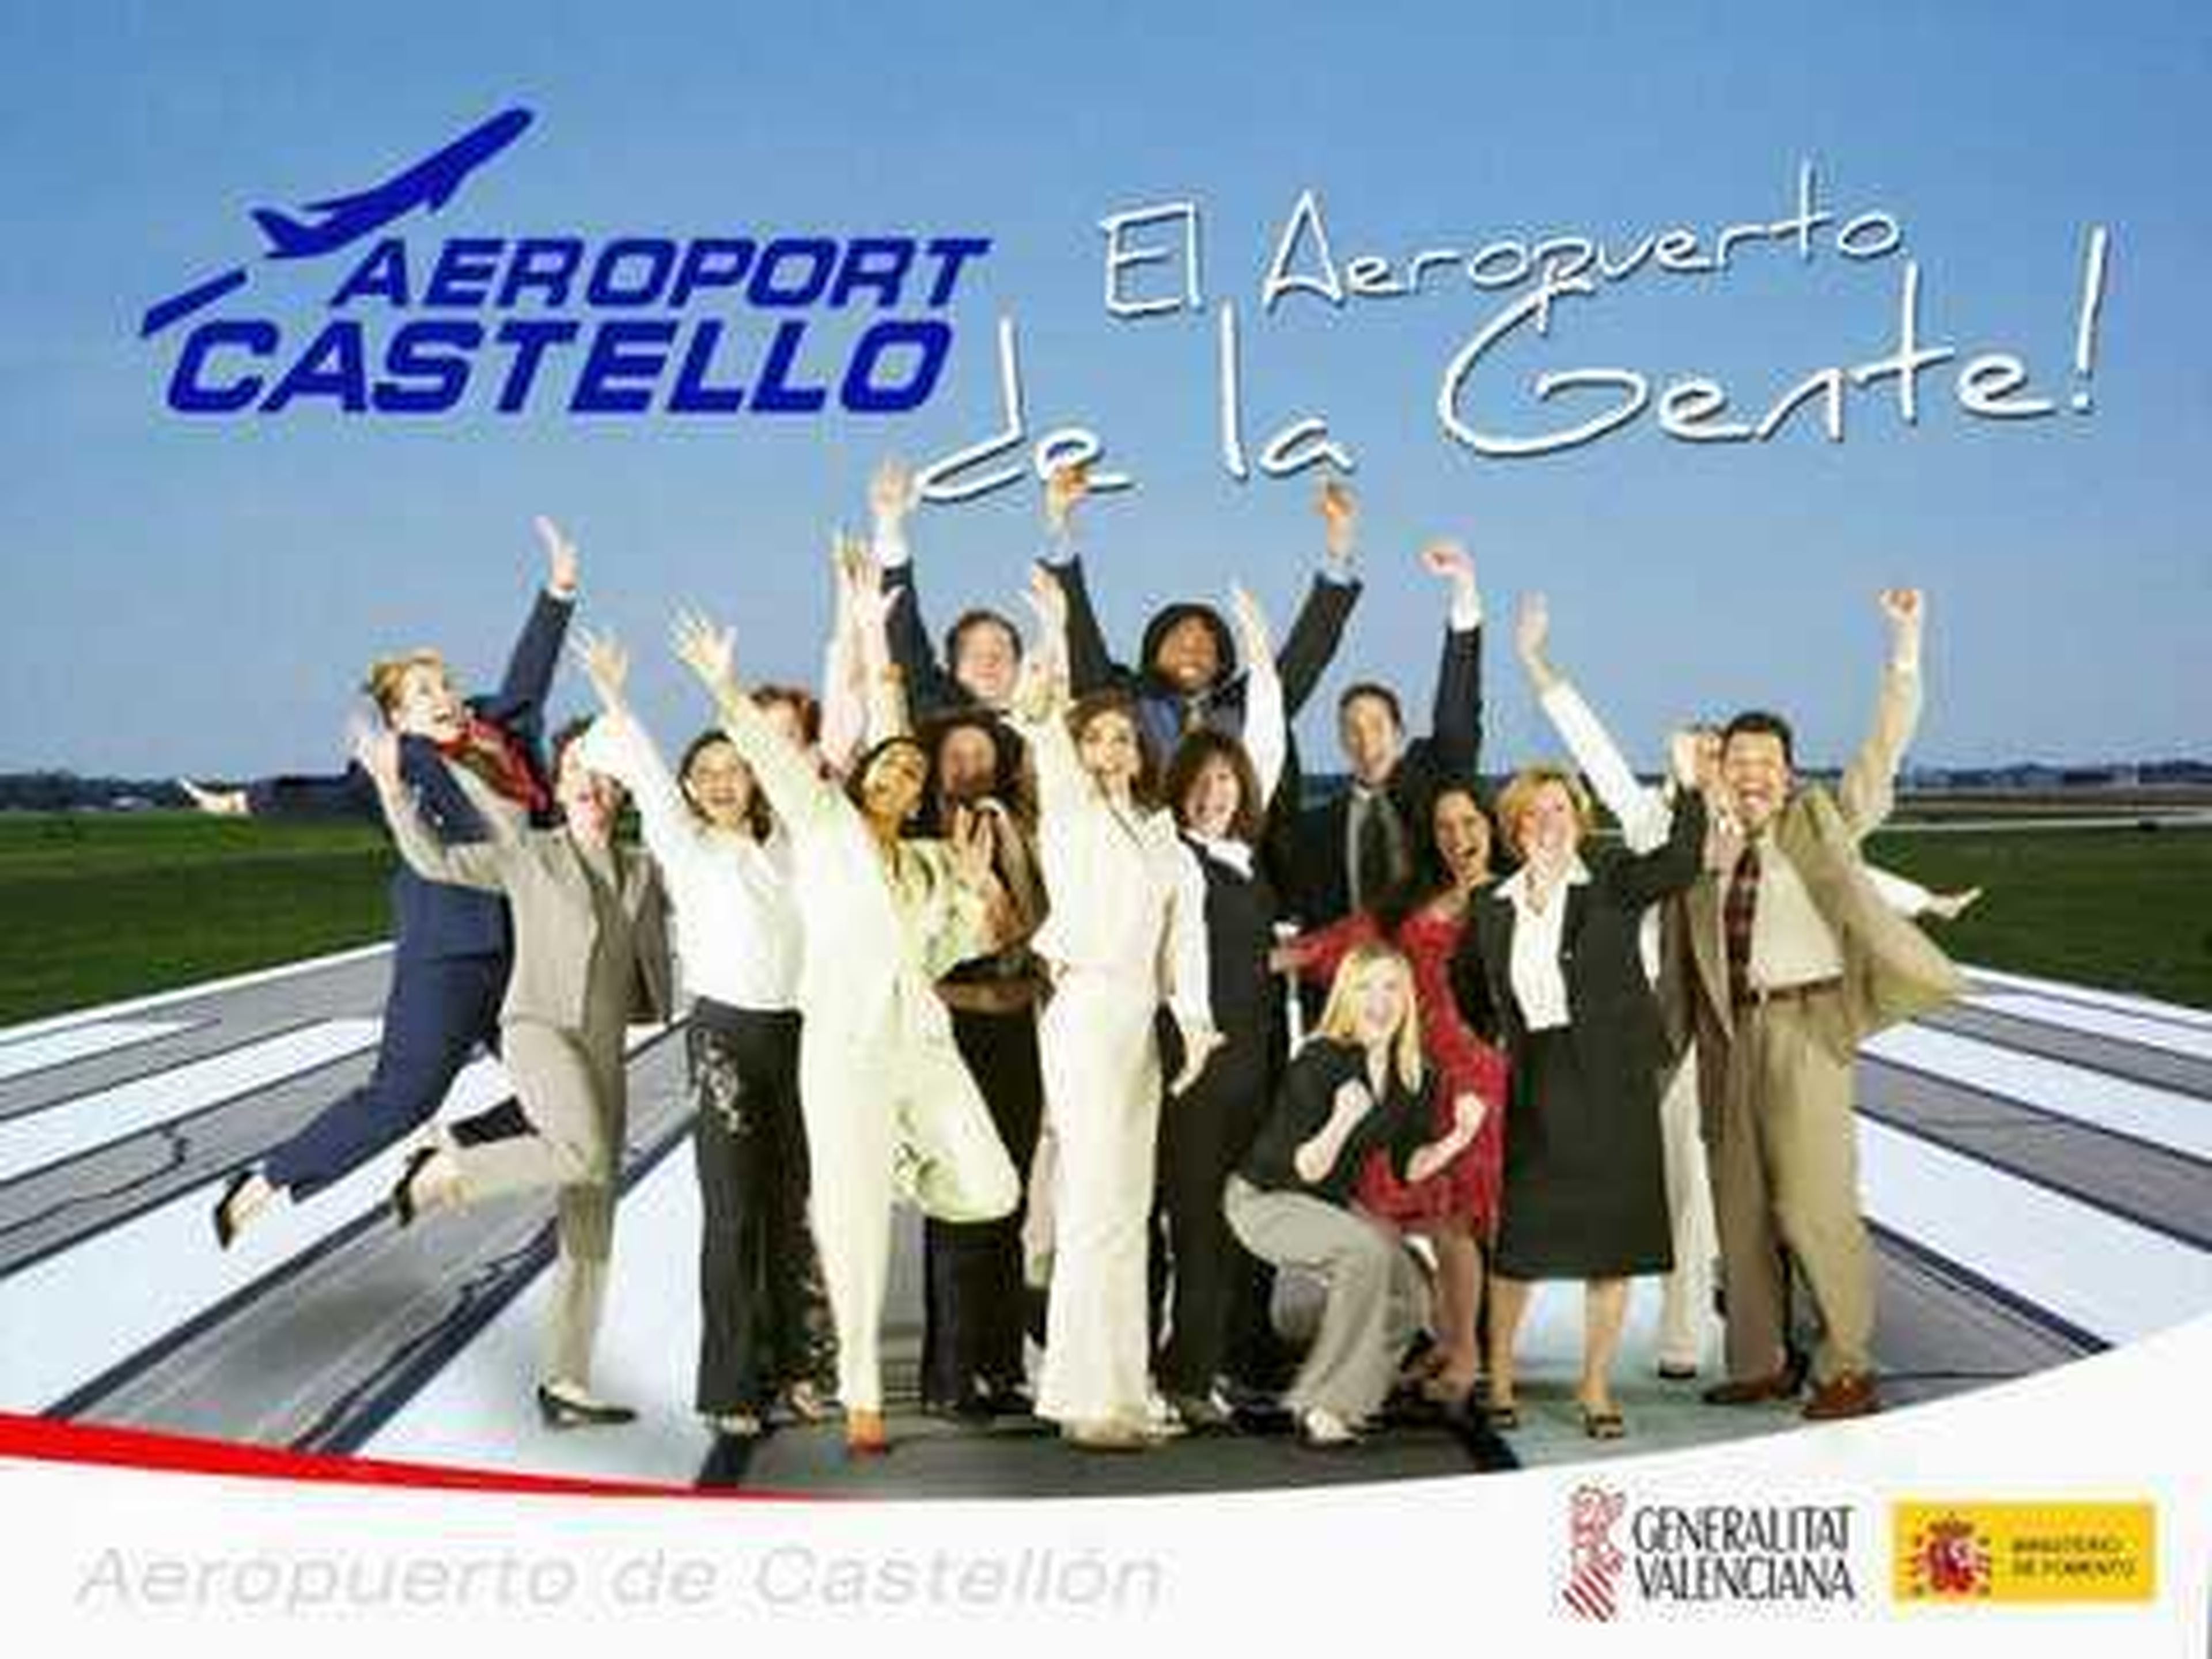 El Aeropuerto de Castellón debería ser un circuito